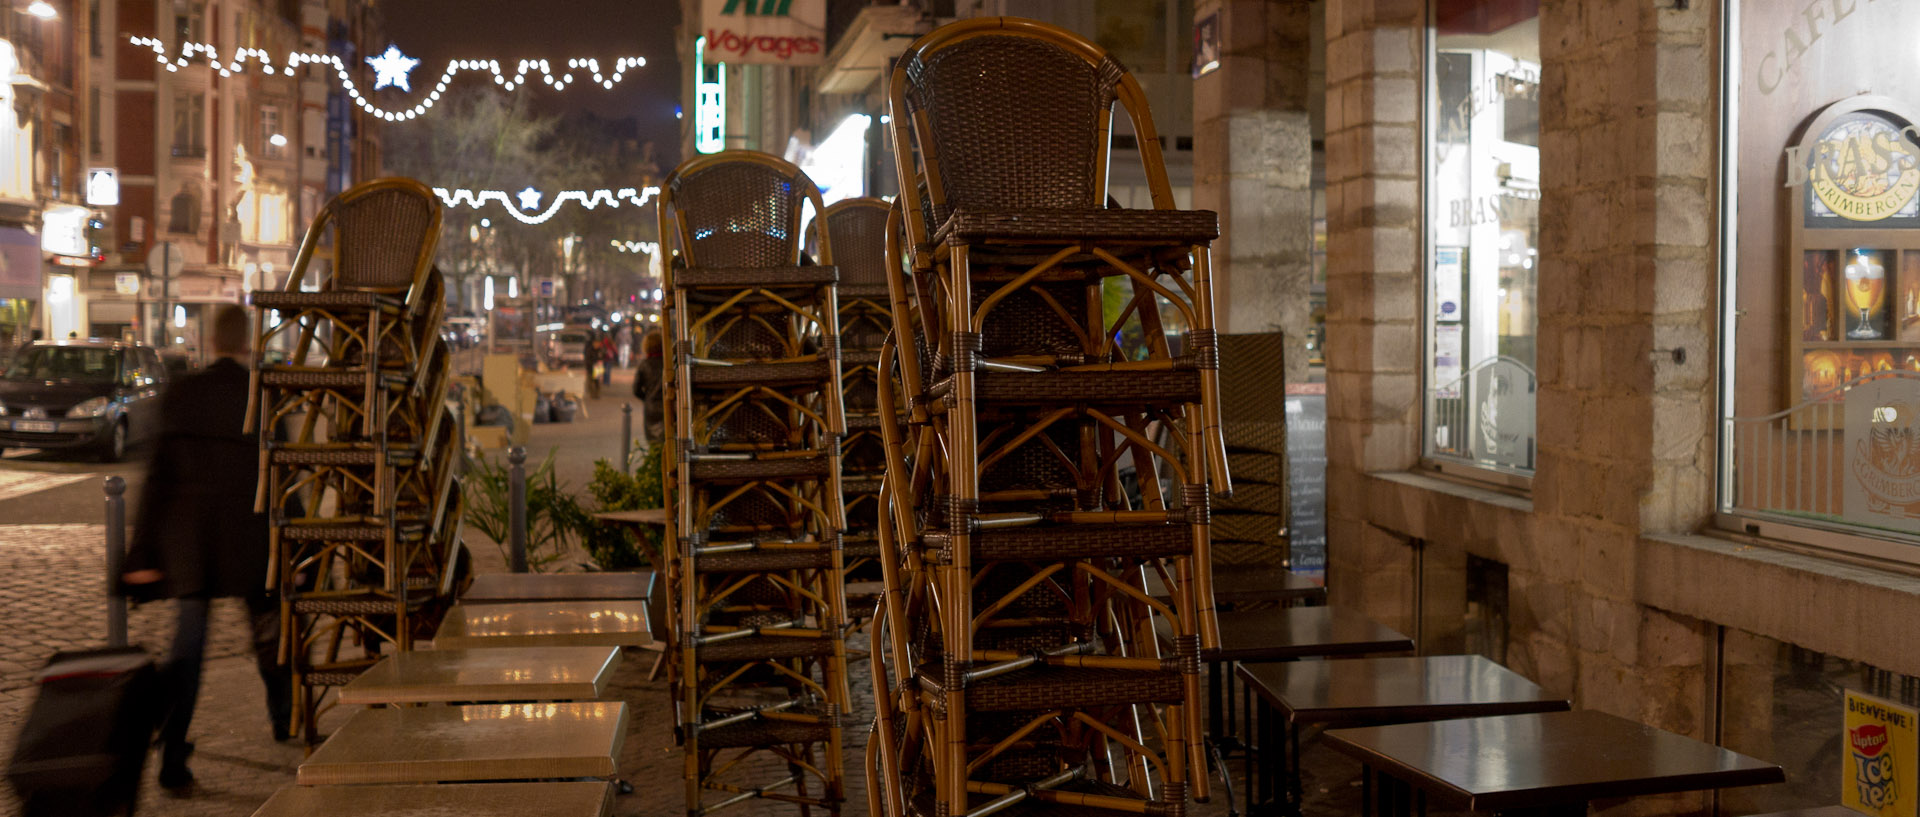 Chaises empilées sur une terrasse de café, rue de Paris, à Lille.